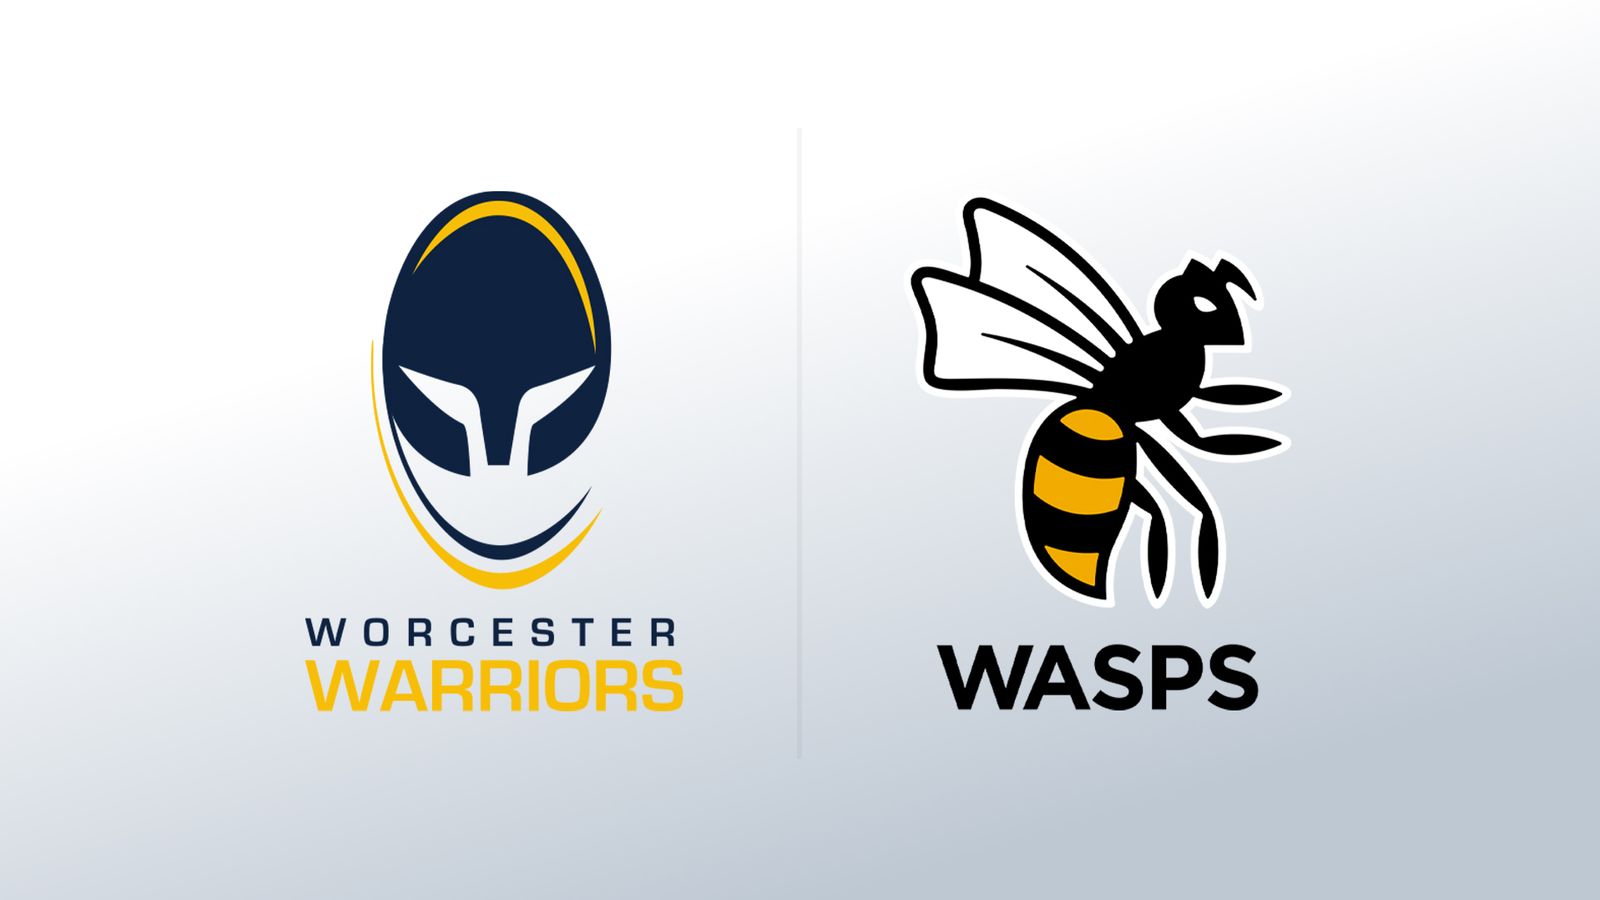 Les guêpes joueront en championnat la saison prochaine mais pas de place pour les Worcester Warriors |  Actualités du rugby à XV